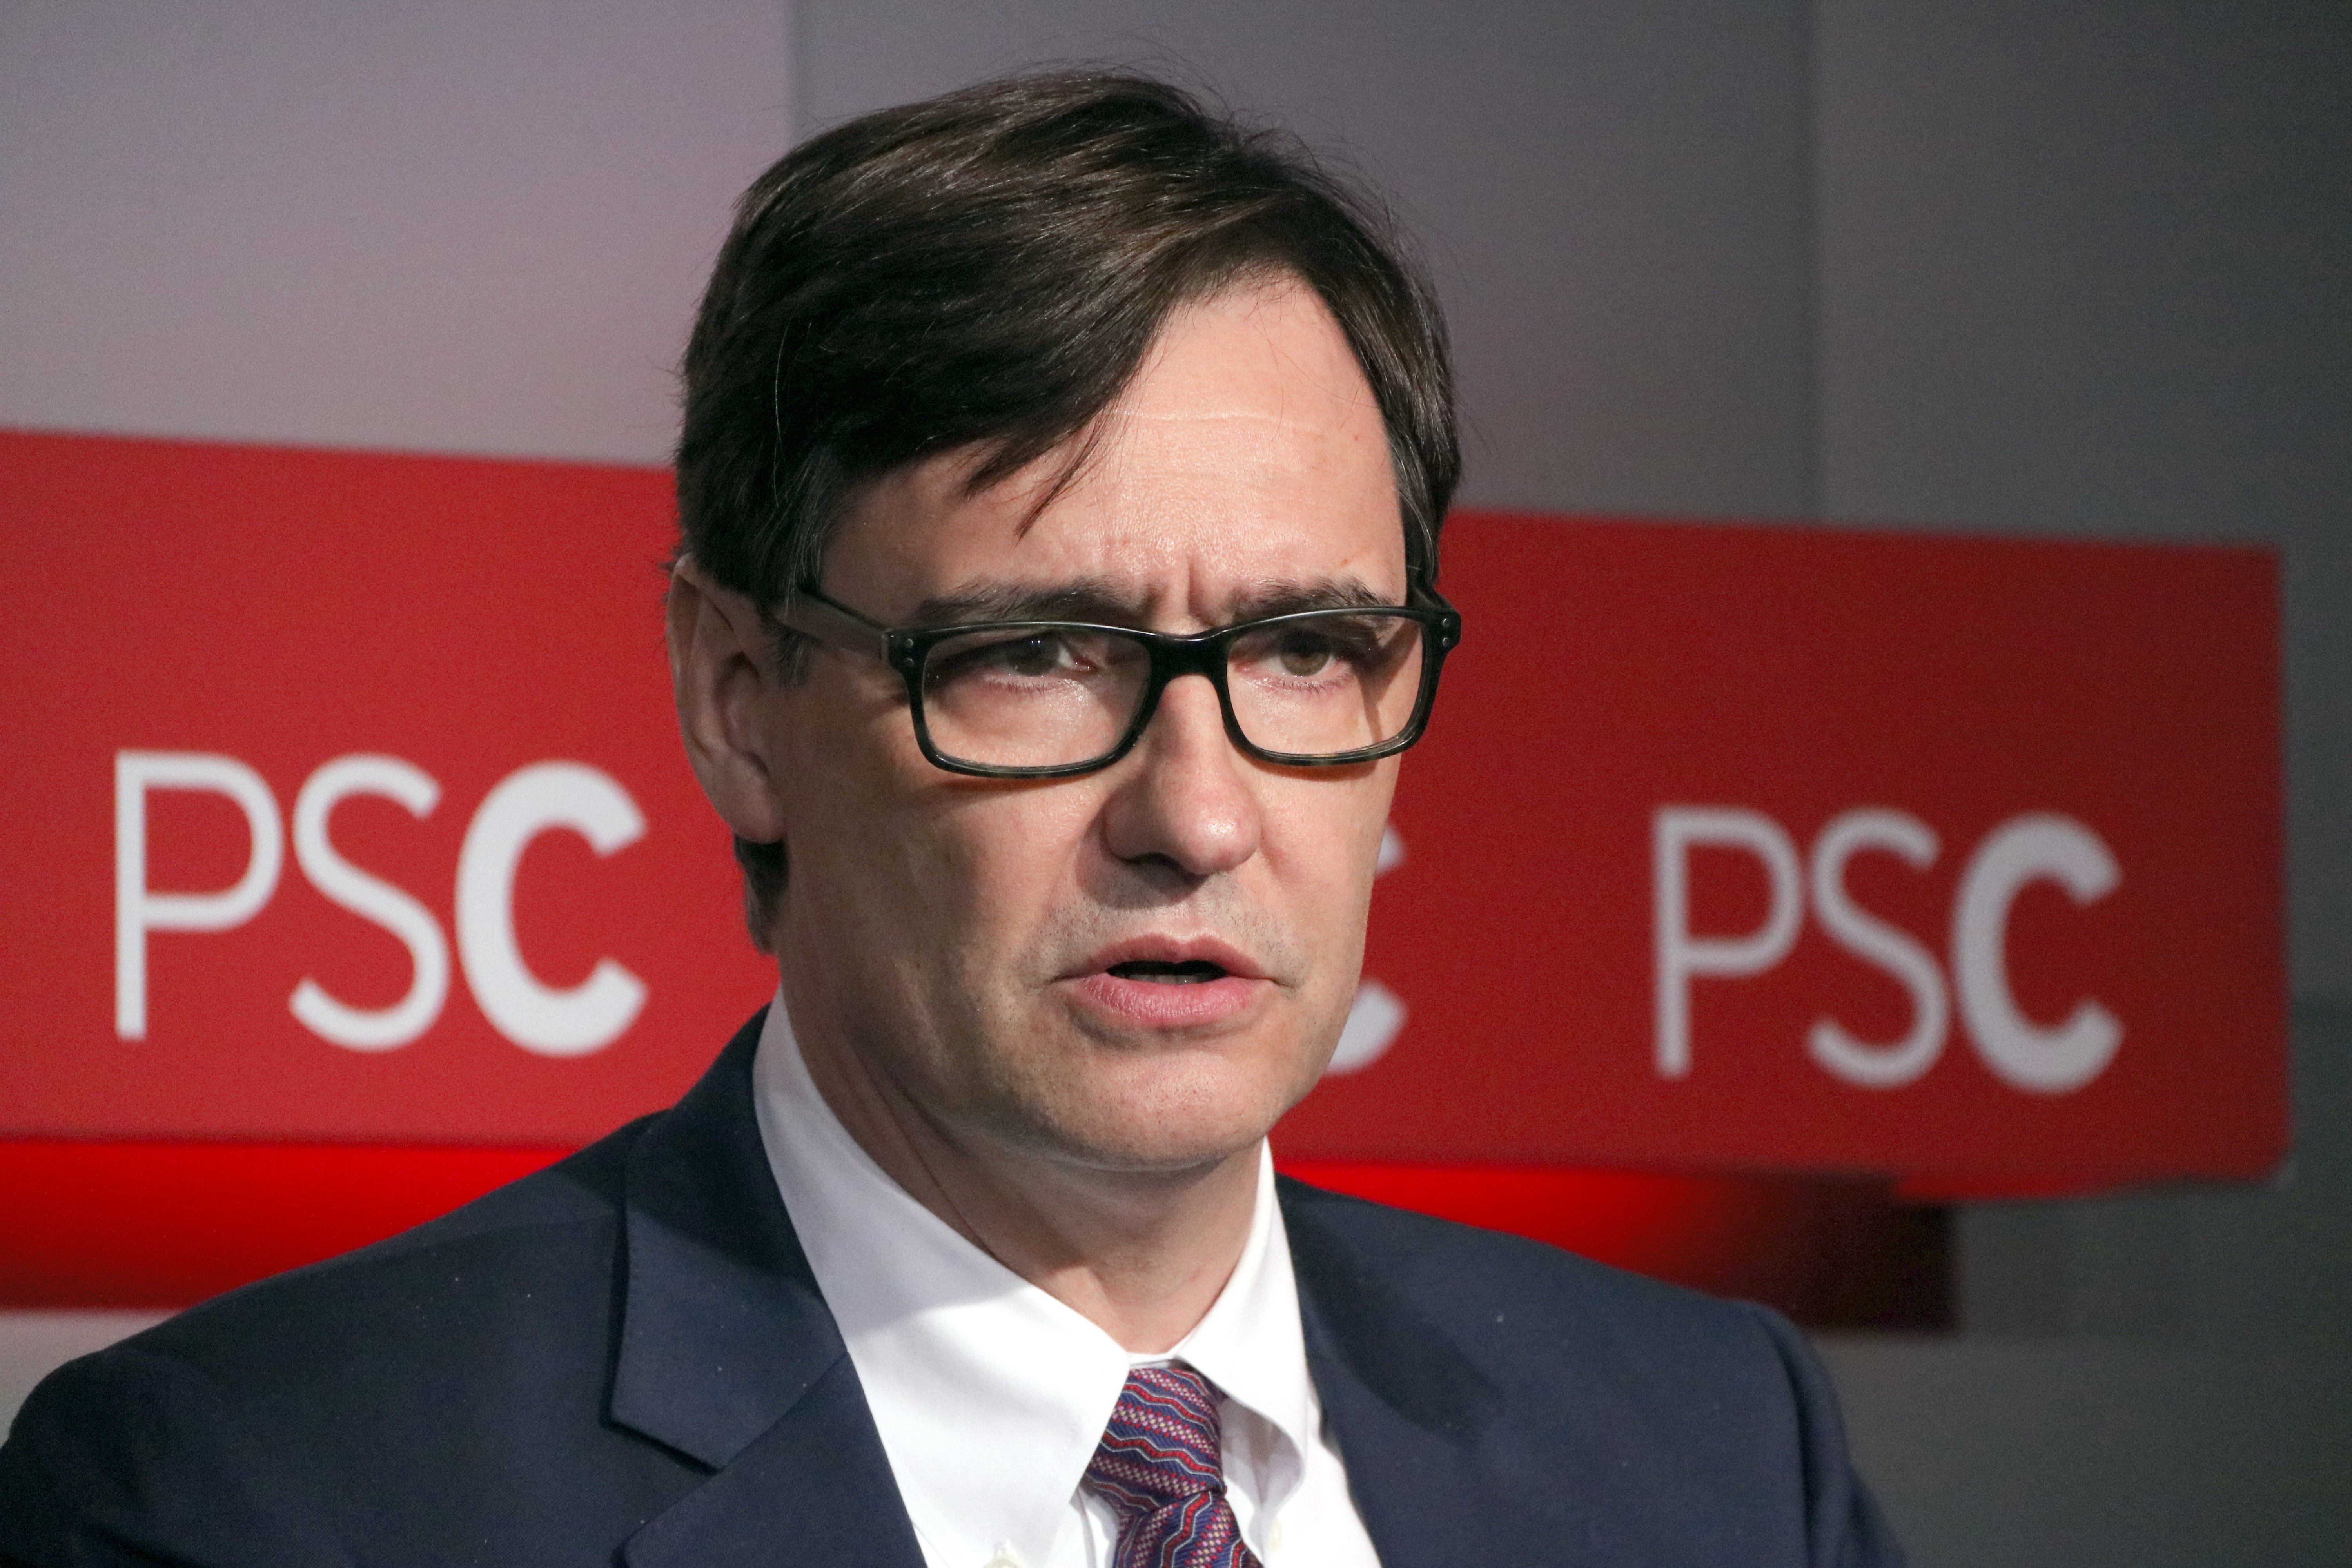 El PSC duda de la "sinceridad" de Puigdemont para negociar con el Estado